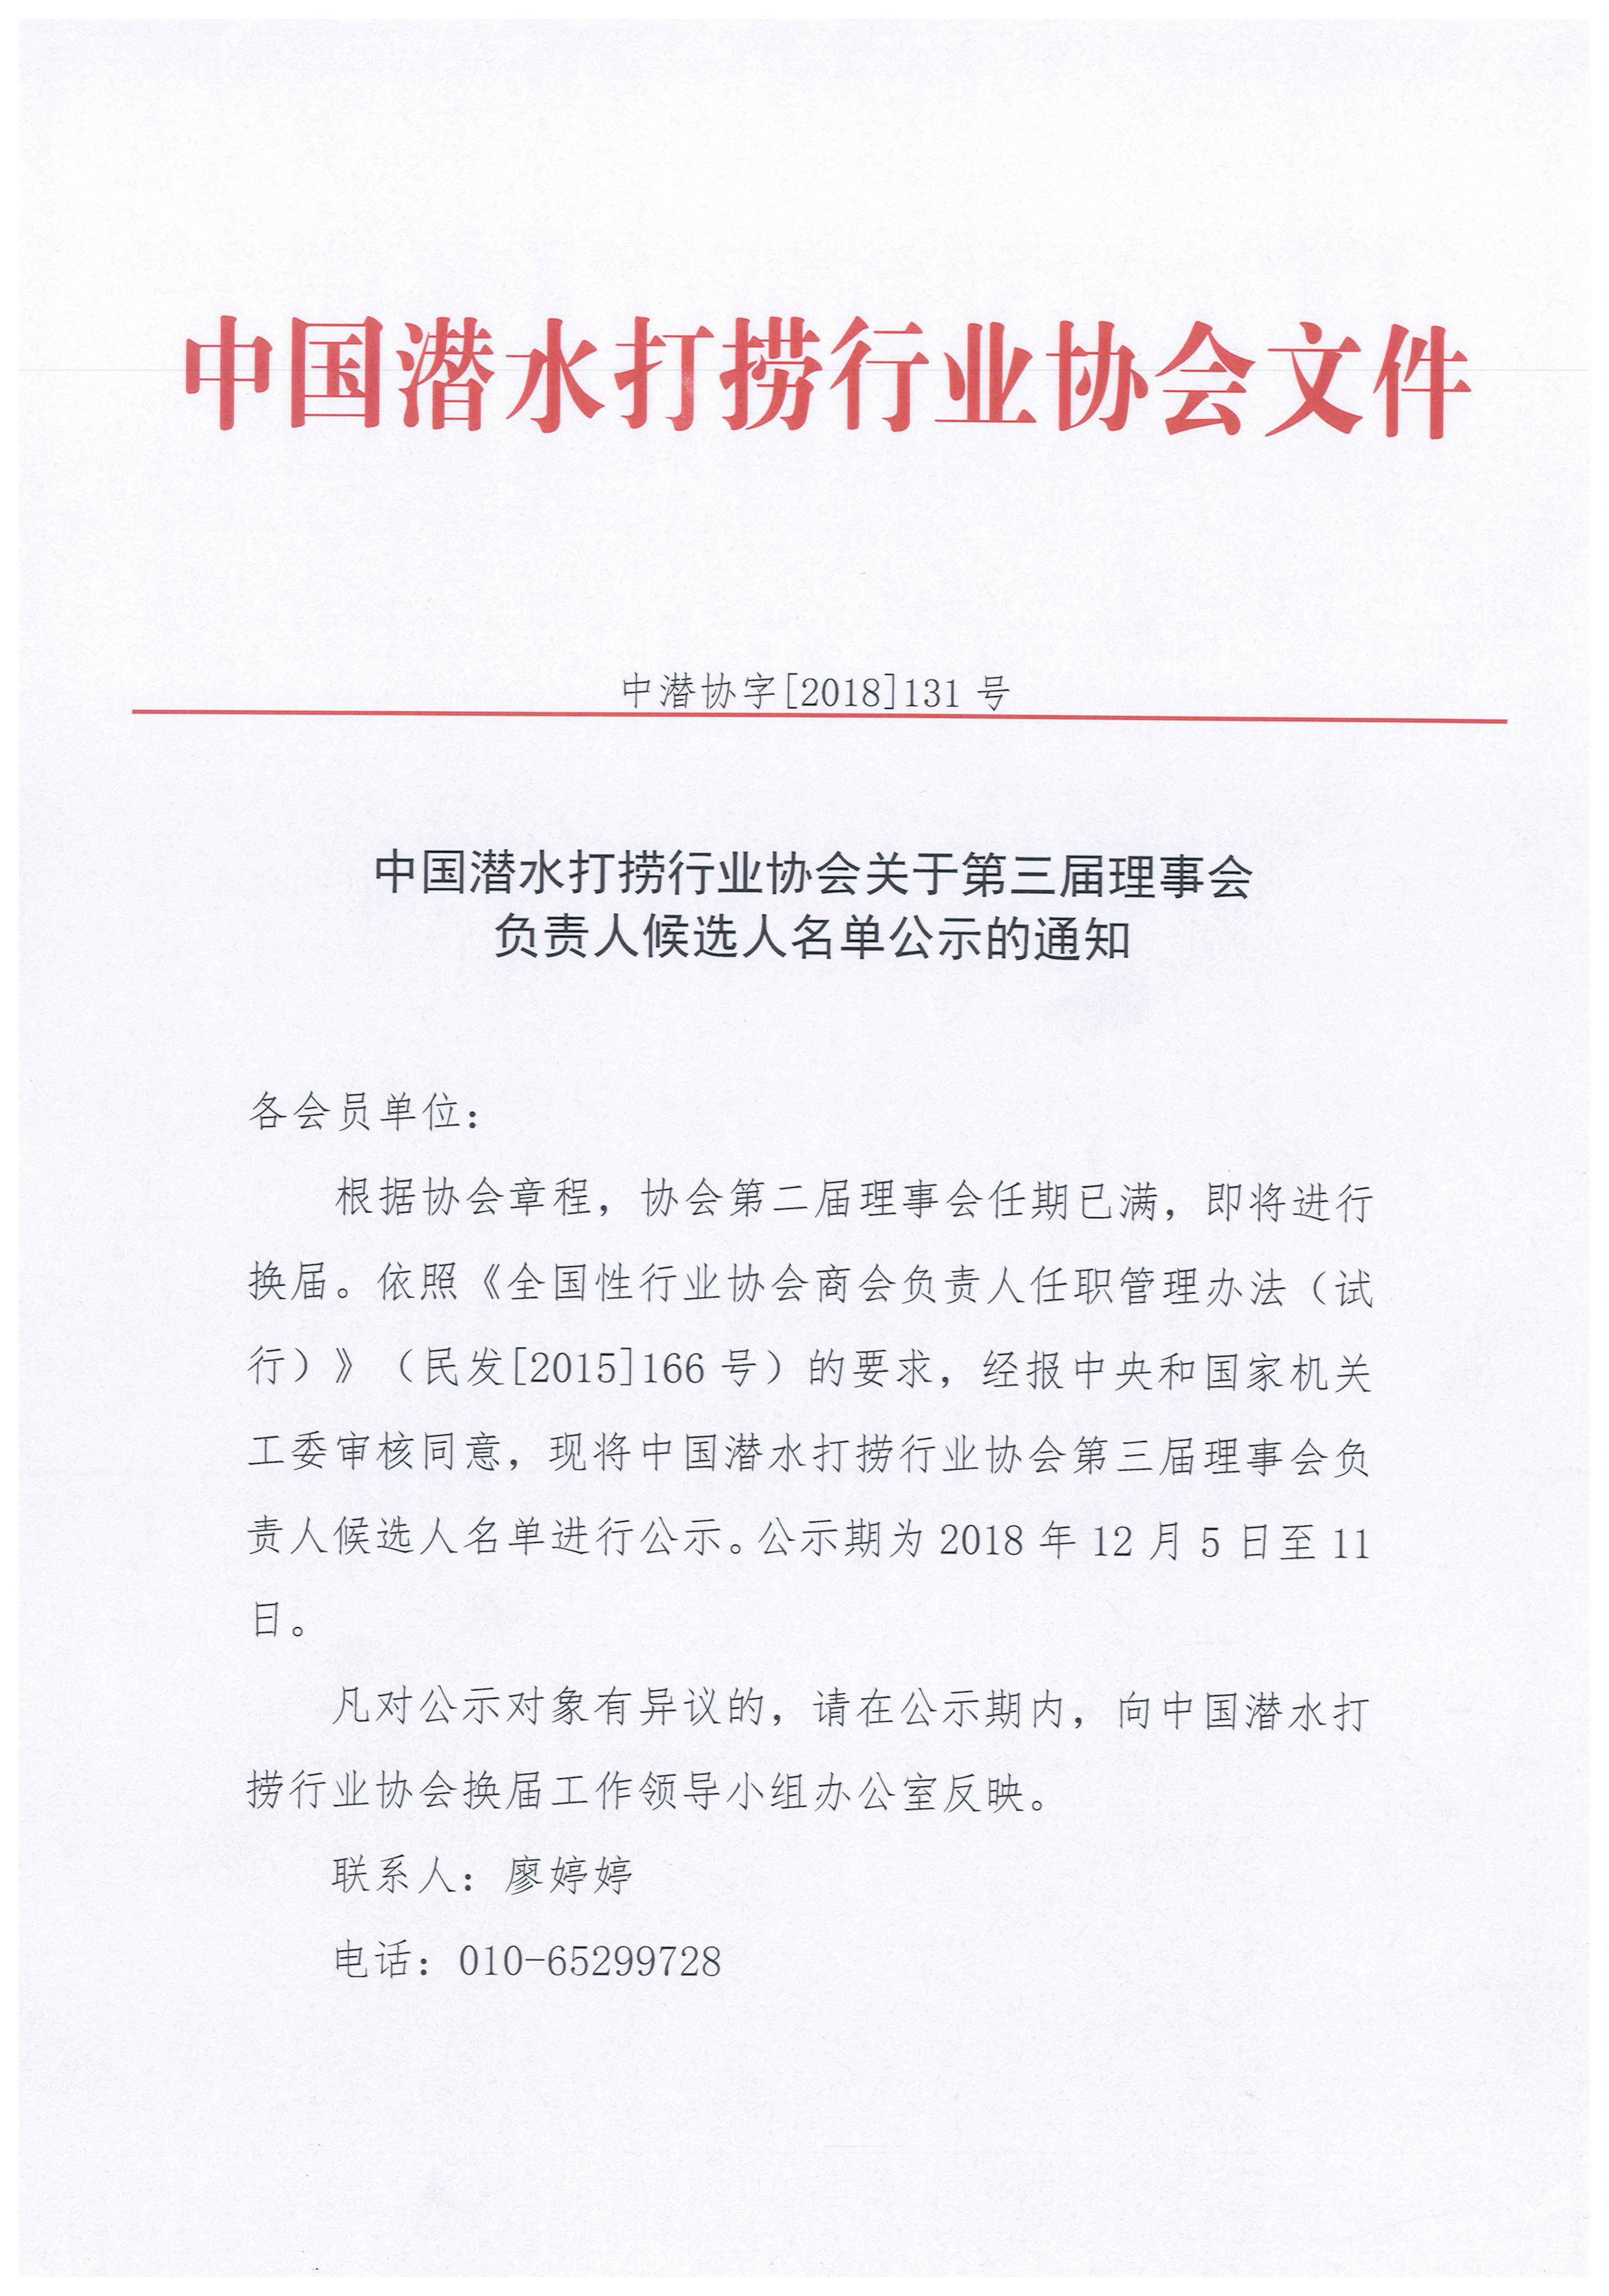 中国潜水打捞行业协会关于第三届理事会负责人候选人名单公示的通知-1.jpg